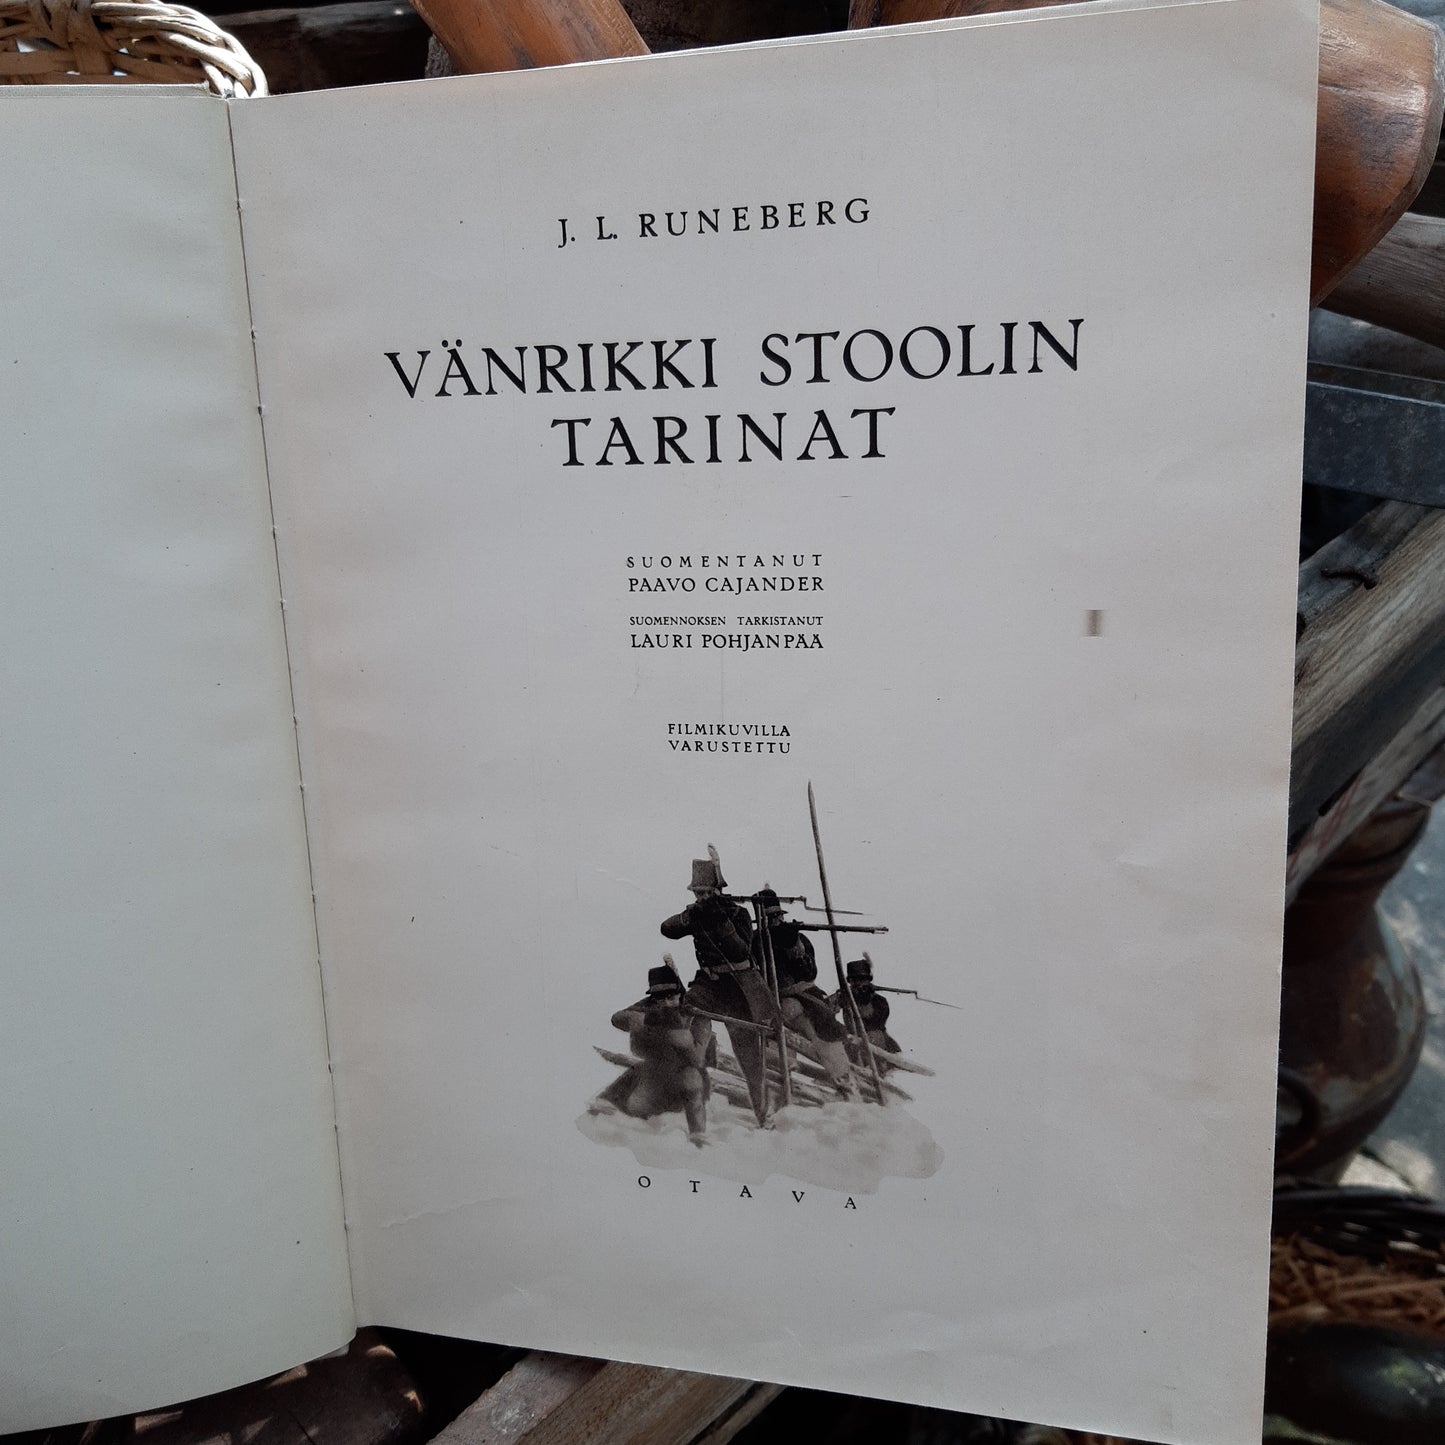 Vänrikki Stoolin tarinat - J. L. Runeberg